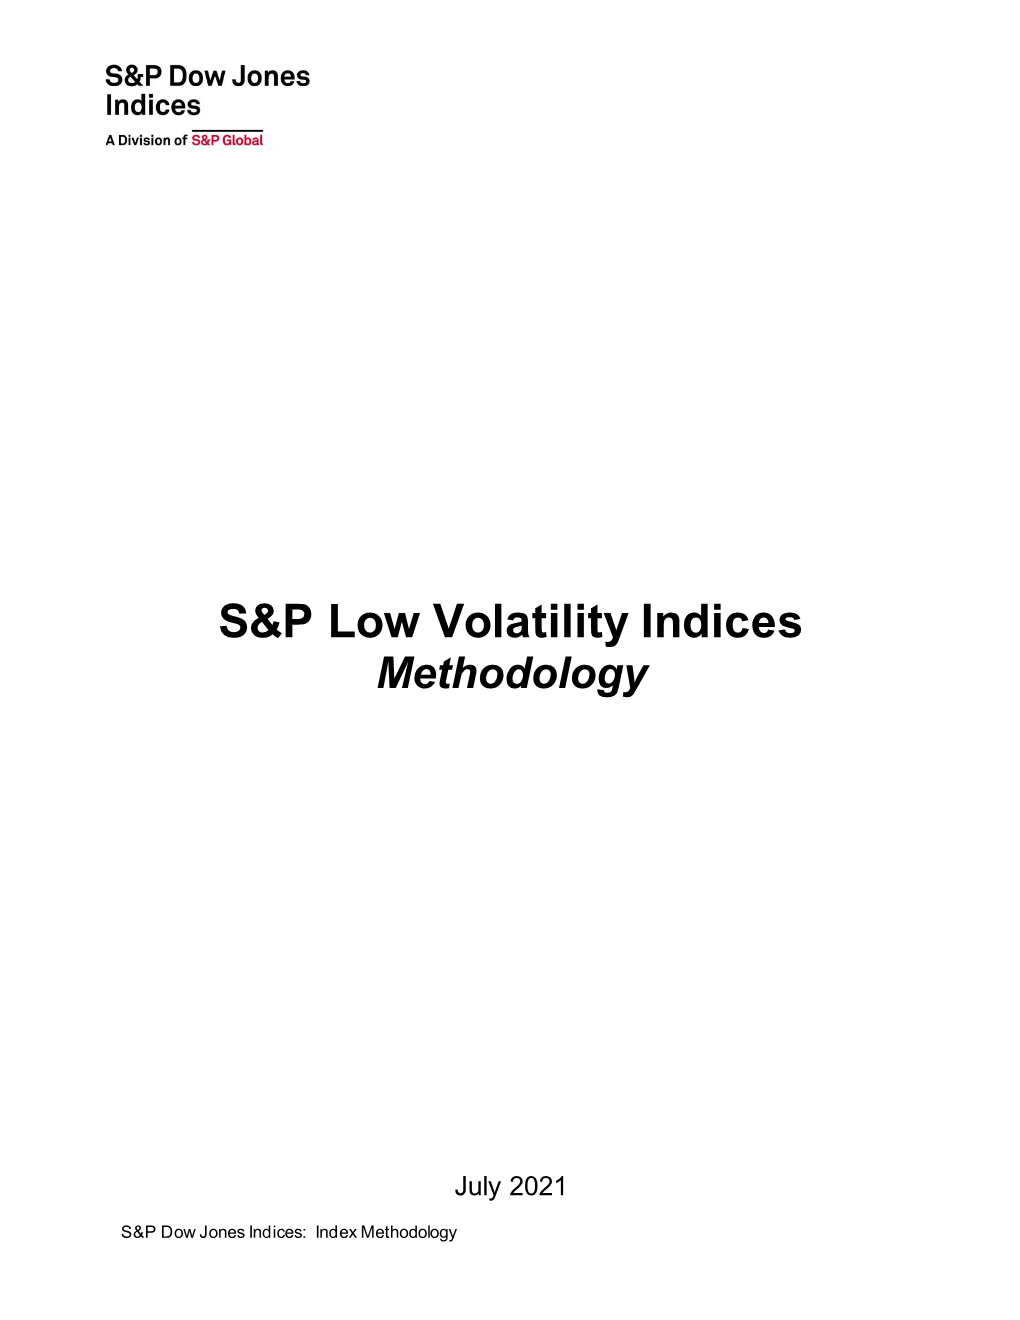 S&P Low Volatility Indices Methodology